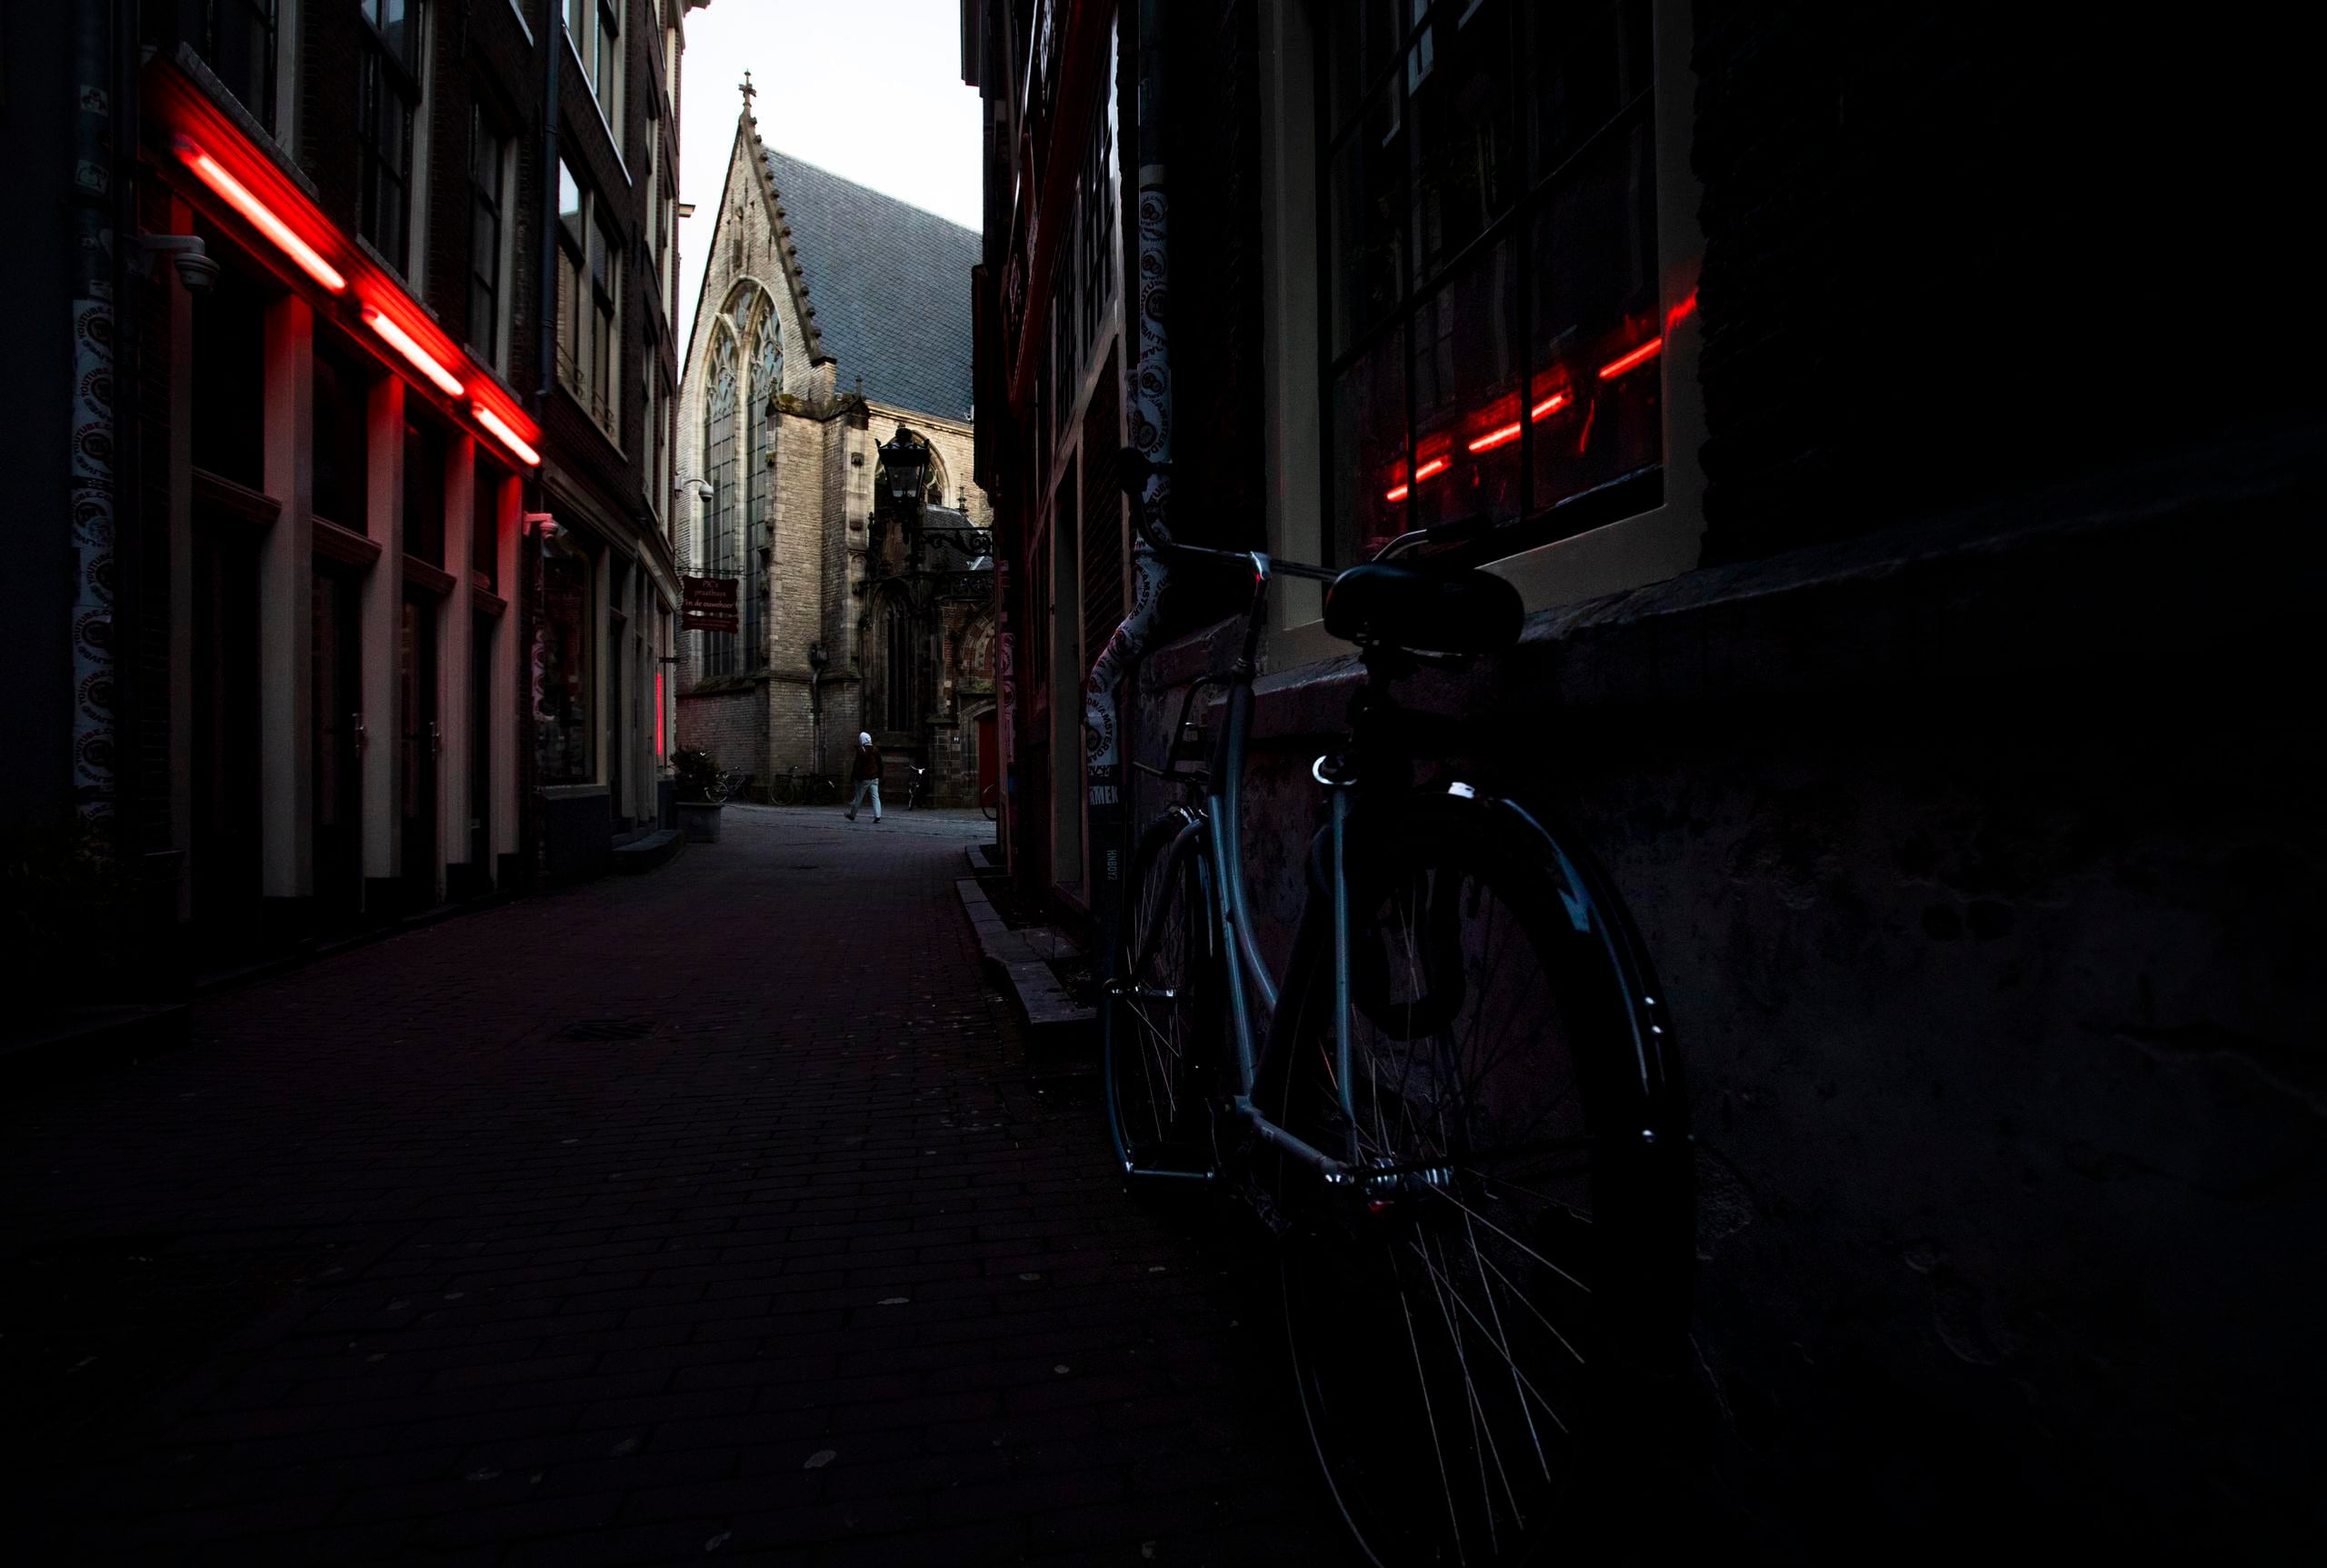 Un hombre camina por la calle de los burdeles en el célebre distrito de luz roja de Ámsterdam